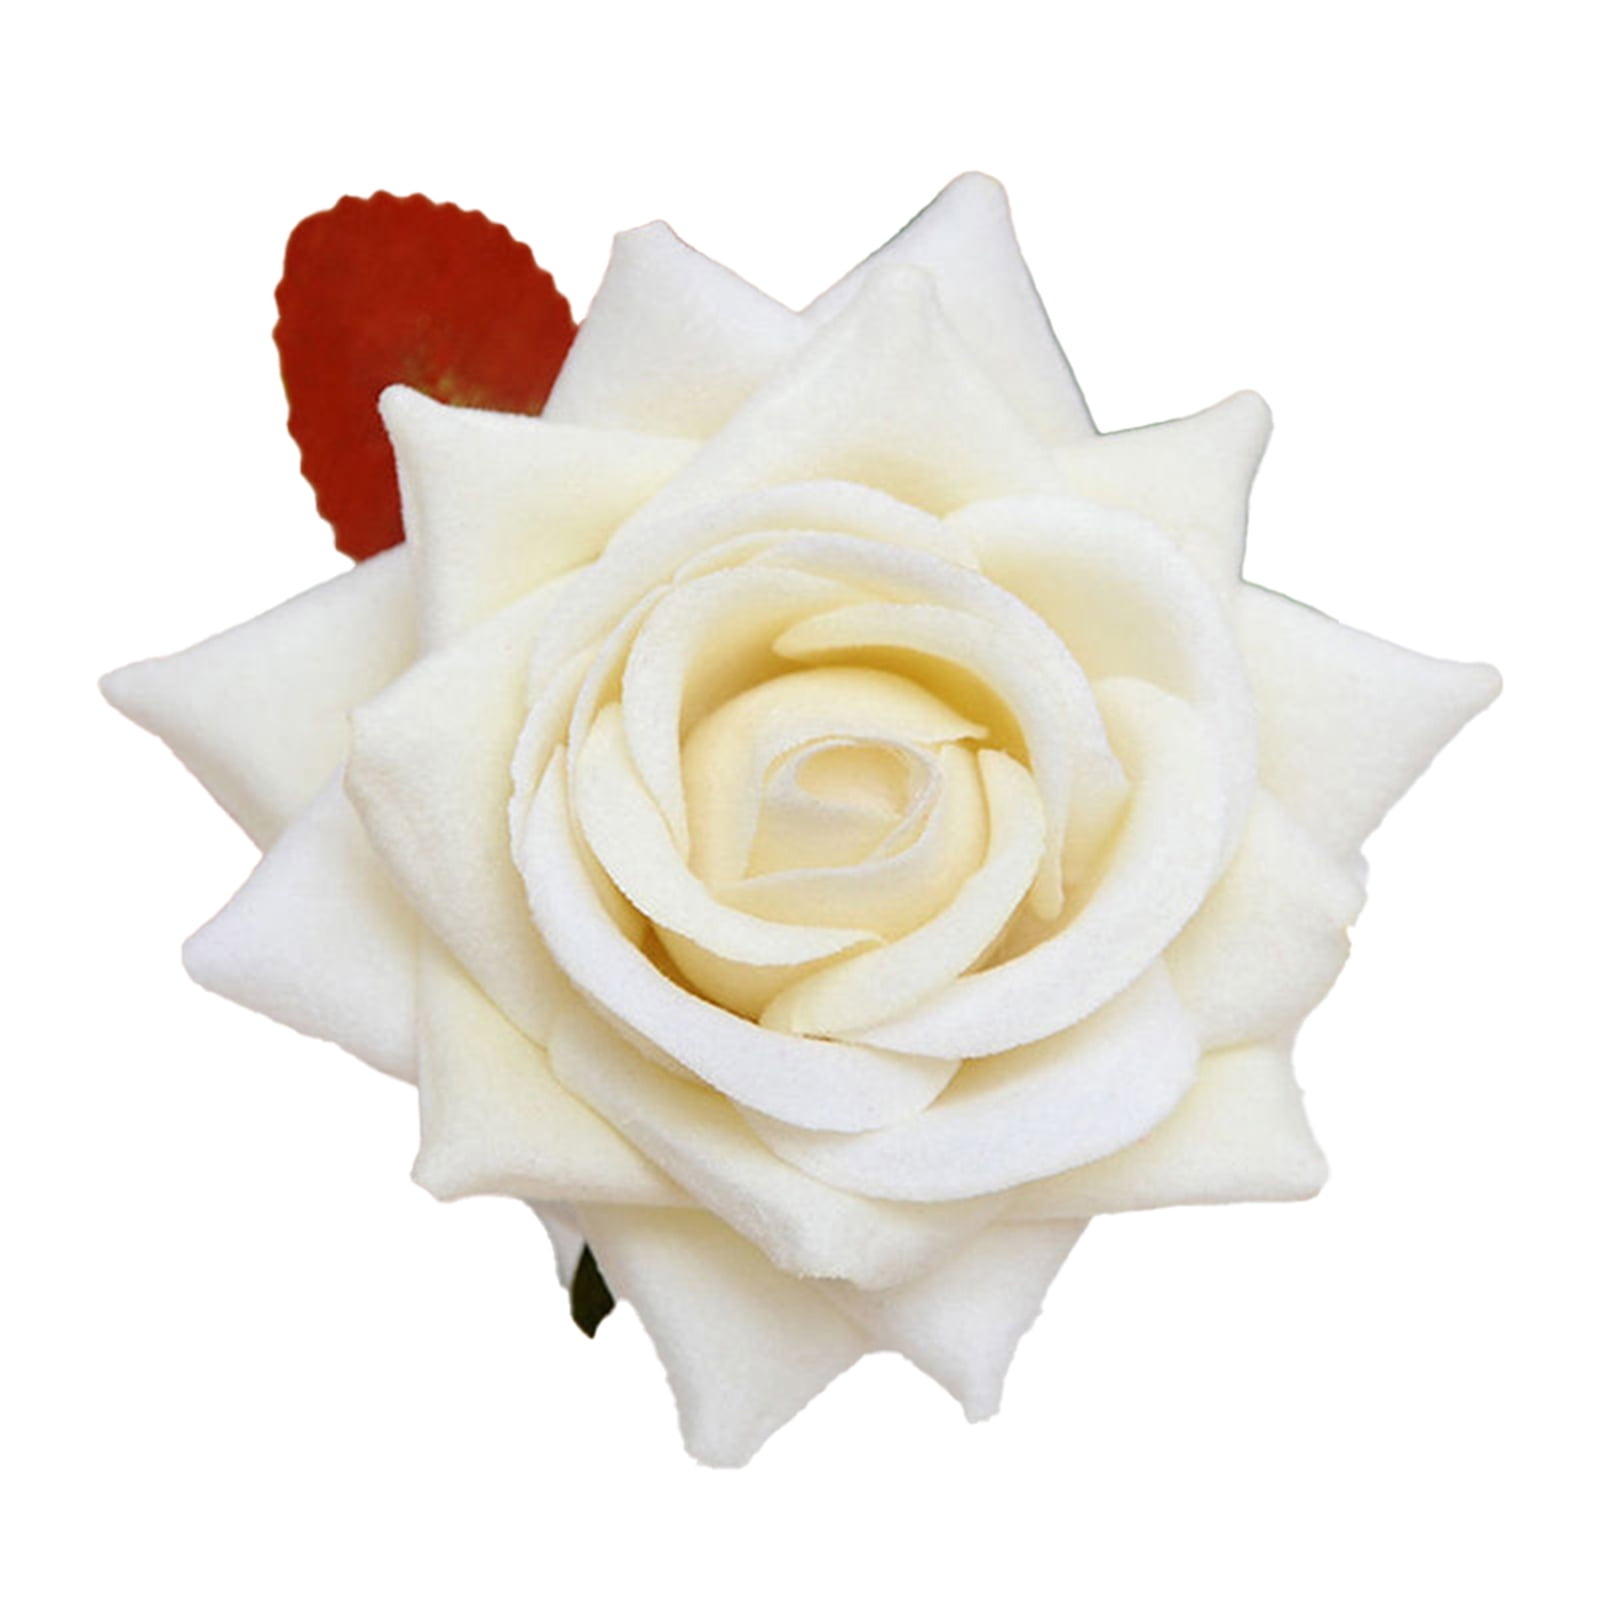 Details about   50 X Mini 3 CM Artificial Rose Flower Heads Foam Wedding Party Decor Wholesale 